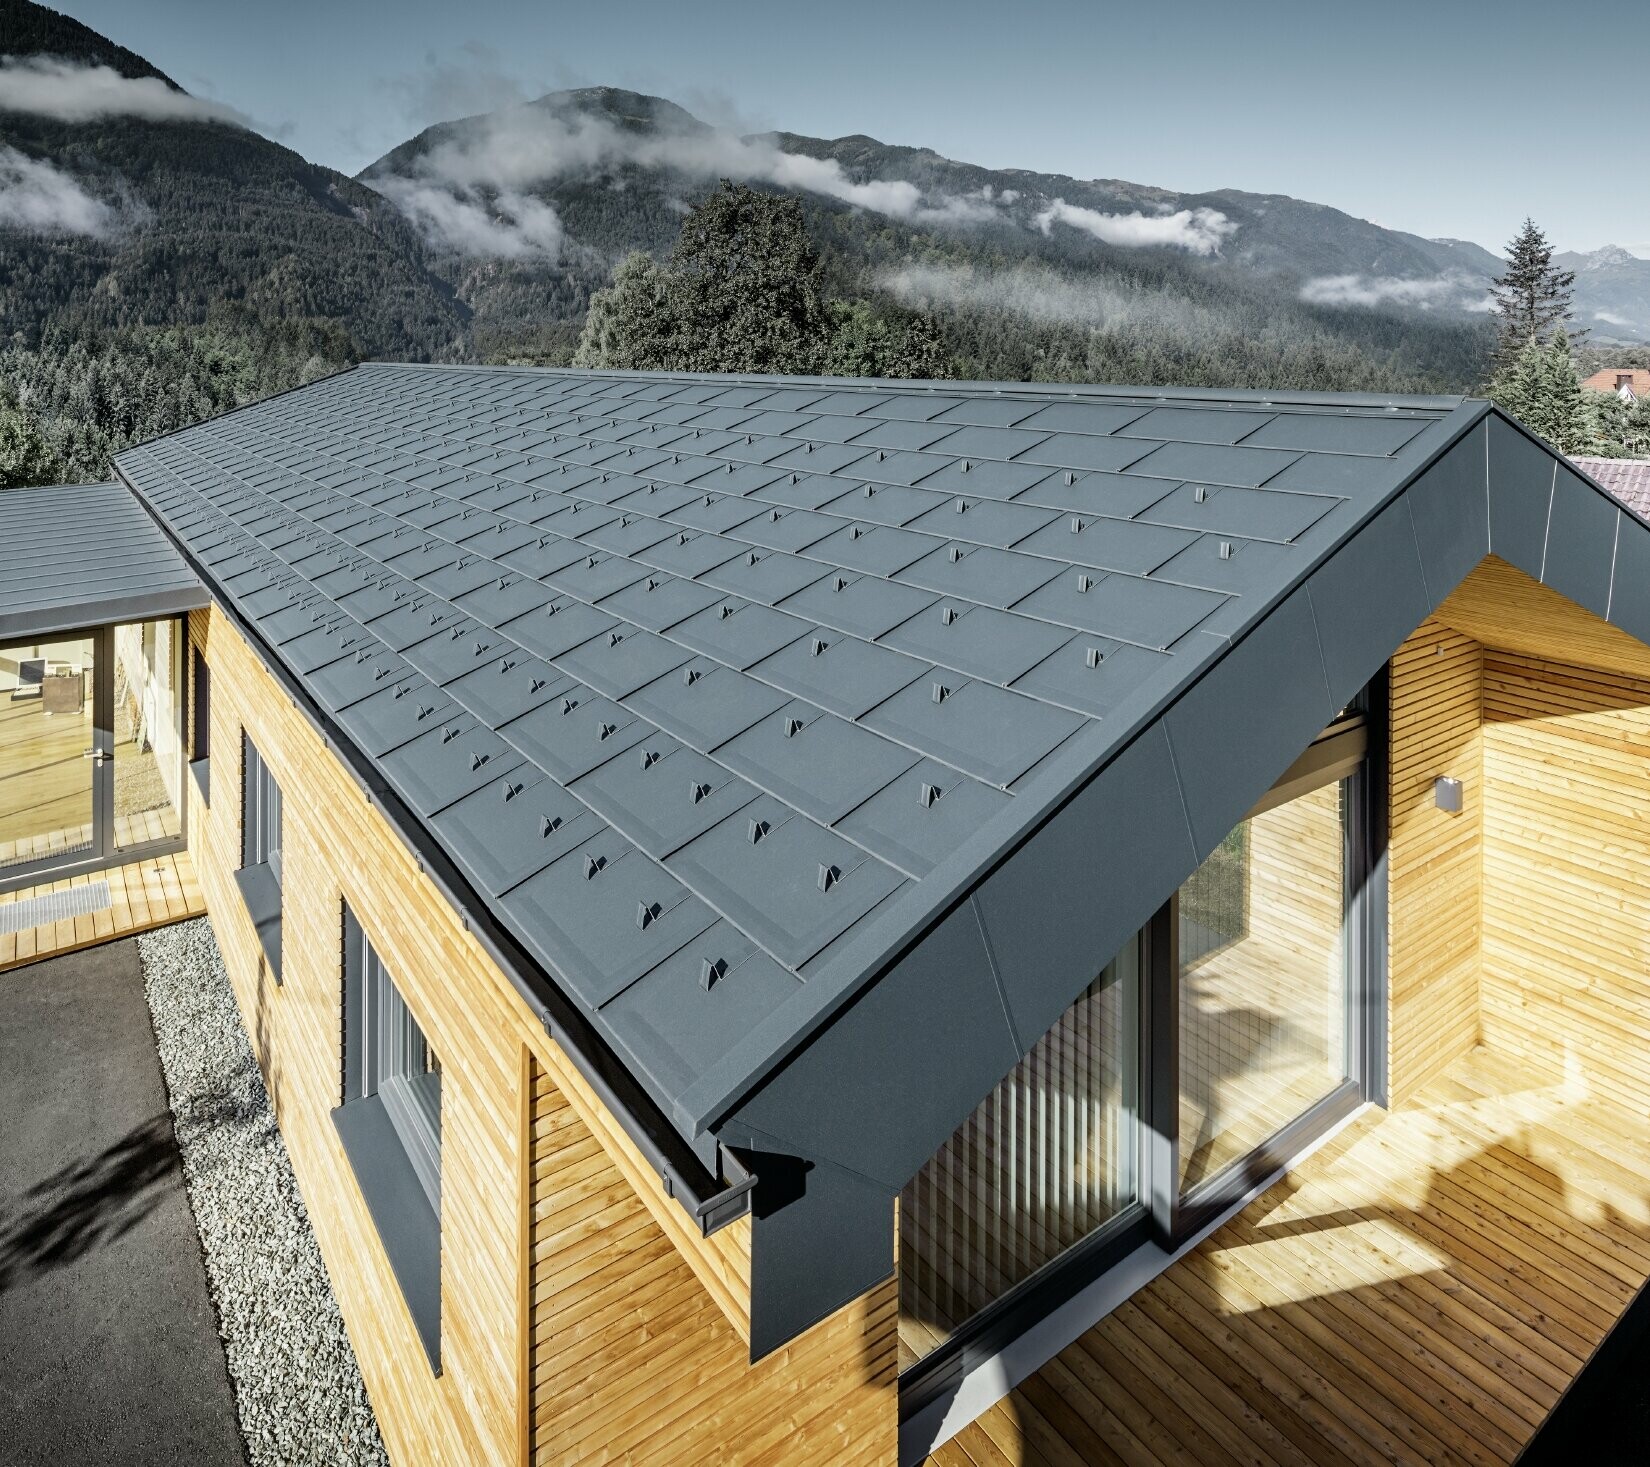 Budova s lehkou hliníkovou střechou, dřevěnou fasádou a prosklenou terasou